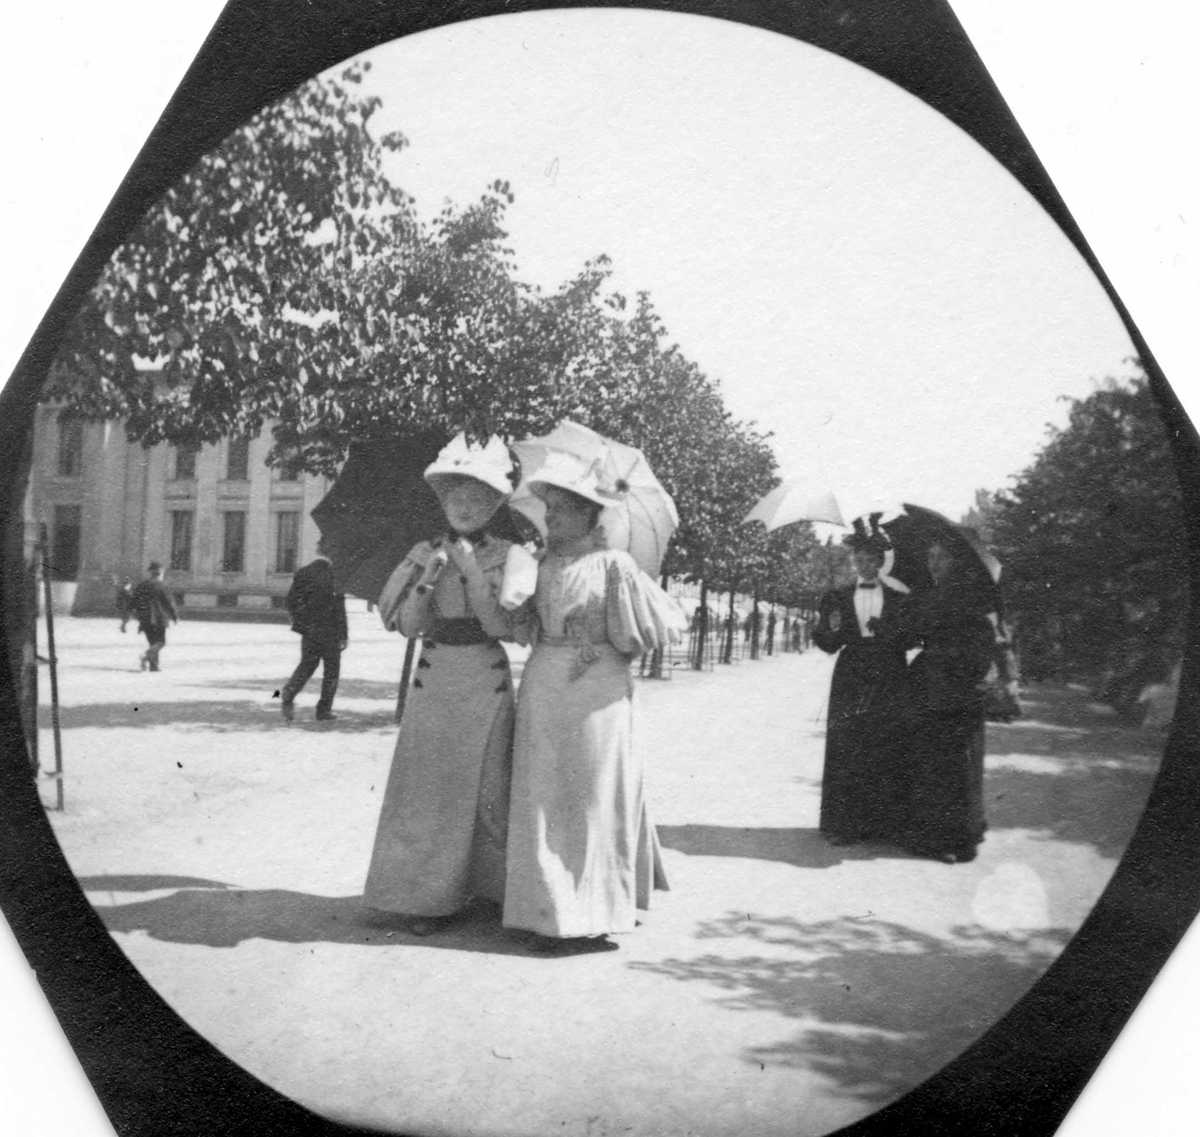 Frk.Anna Ording og frk. Harriet Hanson spaserer langs  Karl Johans gate, Oslo, Universitetet på andre siden av gaten.